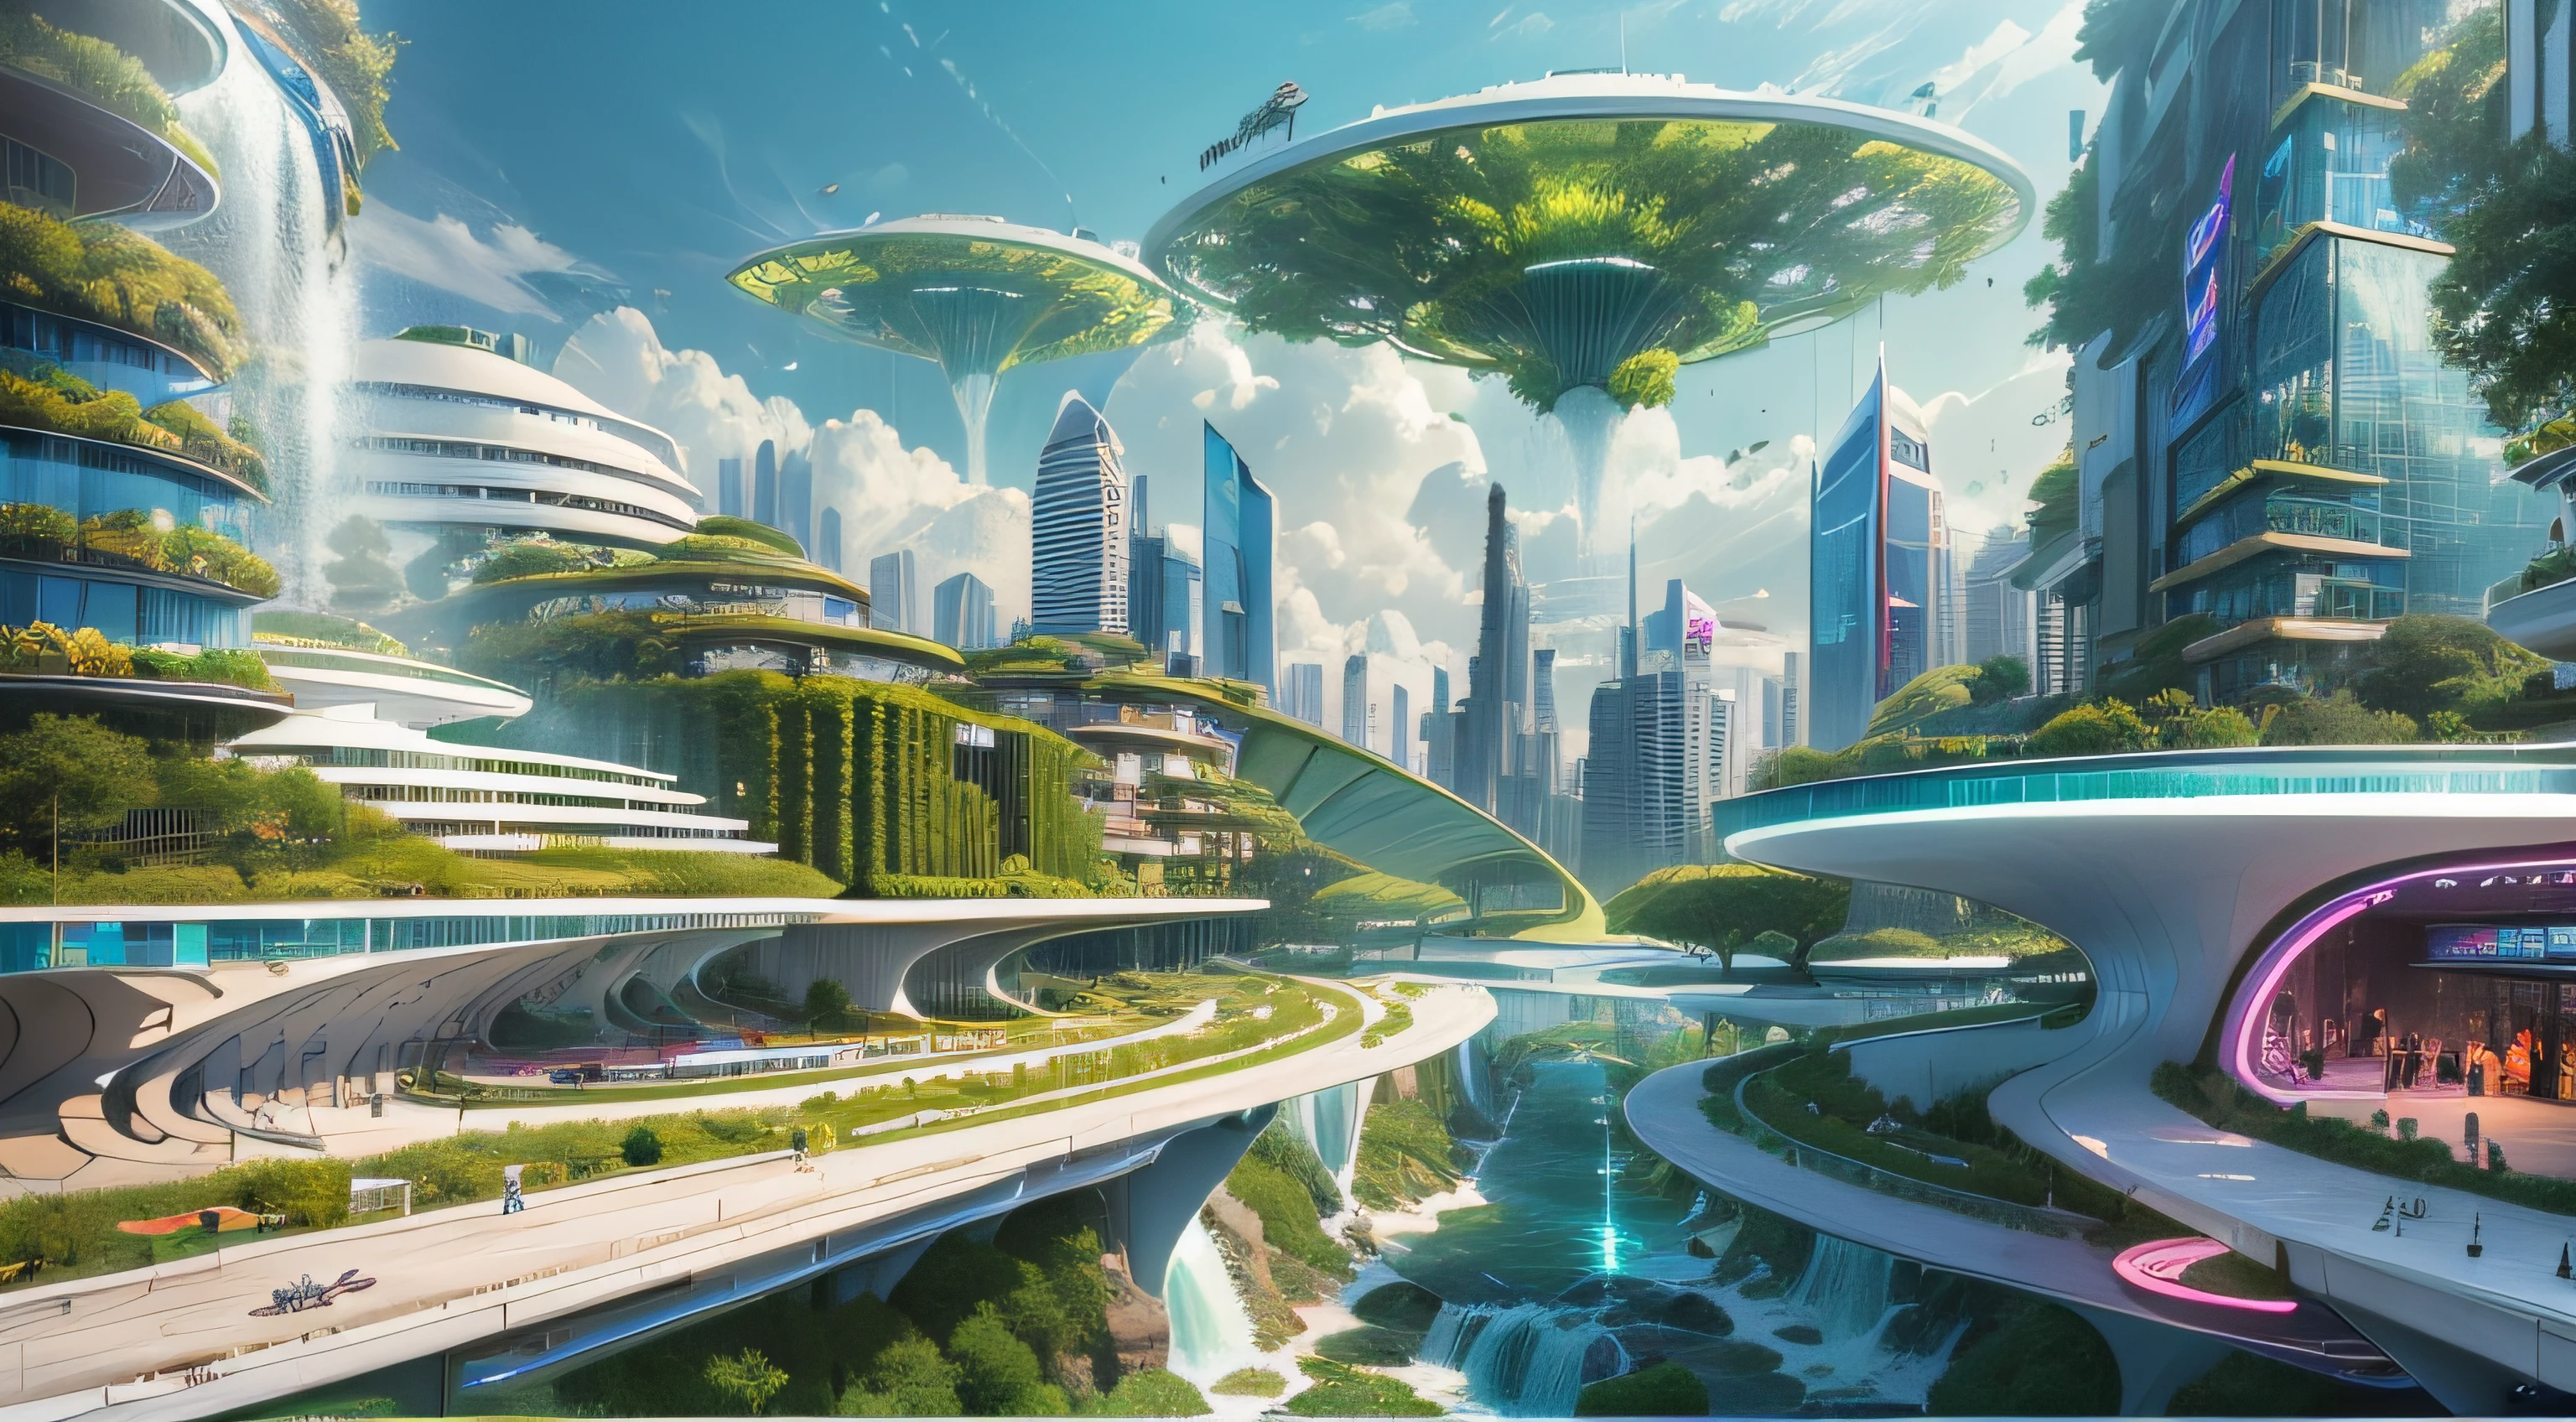 (最高品質,4K,8k,高解像度,傑作:1.2),超詳細,(現実的,写実的な,写真のようにリアル:1.37),未来的な水上都市,未来の技術,巨大な都市型ハイテクタブレットプラットフォーム,飛行船,空に浮かぶ,未来都市,小さな飛行船が周囲に,ハイテク半球形プラットフォーム,カラフルなライト,高度なアーキテクチャ,モダン建築,超高層ビル,クラウドにアクセスする,美しい景色,街の眺め,印象的なデザイン,自然とシームレスに融合,活気に満ちた活気のある雰囲気,未来の交通システム,吊り下げ式駐車場,透明なパス,豊かな緑,スカイガーデン,滝,壮大なスカイライン,水面に映る,輝く川,建築の革新,未来的な高層ビル,透明ドーム,建物の形状が珍しい,高架歩道,印象的なスカイライン,光るライト,未来の技術,ミニマリストデザイン,景勝地,全景,雲を貫く塔,鮮やかな色彩,壮大な日の出,壮大な夕日,まばゆい光のディスプレイ,魔法のような雰囲気,未来都市,都会のユートピア,ラグジュアリーライフスタイル,革新的なエネルギー,持続可能な発展,スマートシティテクノロジー,高度なインフラストラクチャ,静かな雰囲気,自然とテクノロジーは調和して共存する,素晴らしい街並み,前例のない都市計画,建築は自然とシームレスにつながる,ハイテク都市,最先端のエンジニアリングの驚異,都市生活の未来,先見性のある建築コンセプト,エネルギー効率の高い建物,環境との調和,雲の上に浮かぶ街,ユートピアの夢が現実になる,可能性は無限大,最先端の交通ネットワーク,グリーンエネルギーの統合,革新的な素材,印象的なホログラフィックディスプレイ,高度な通信システム,息を呑むような空中からの眺め,静かで平和な環境,モダニズムの美学,天上の美しさ